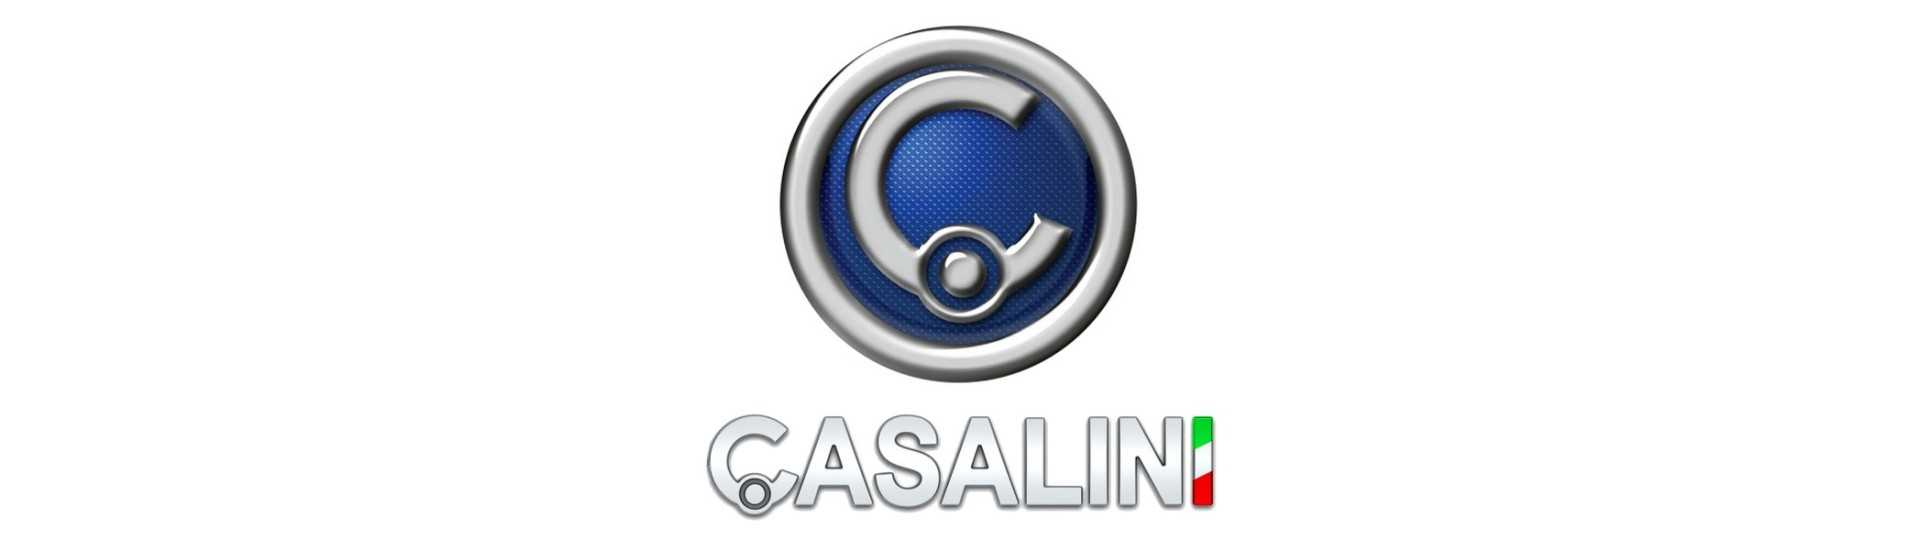 Carnet de intretinere la cel mai bun pret pentru o masina fara permis Casalini